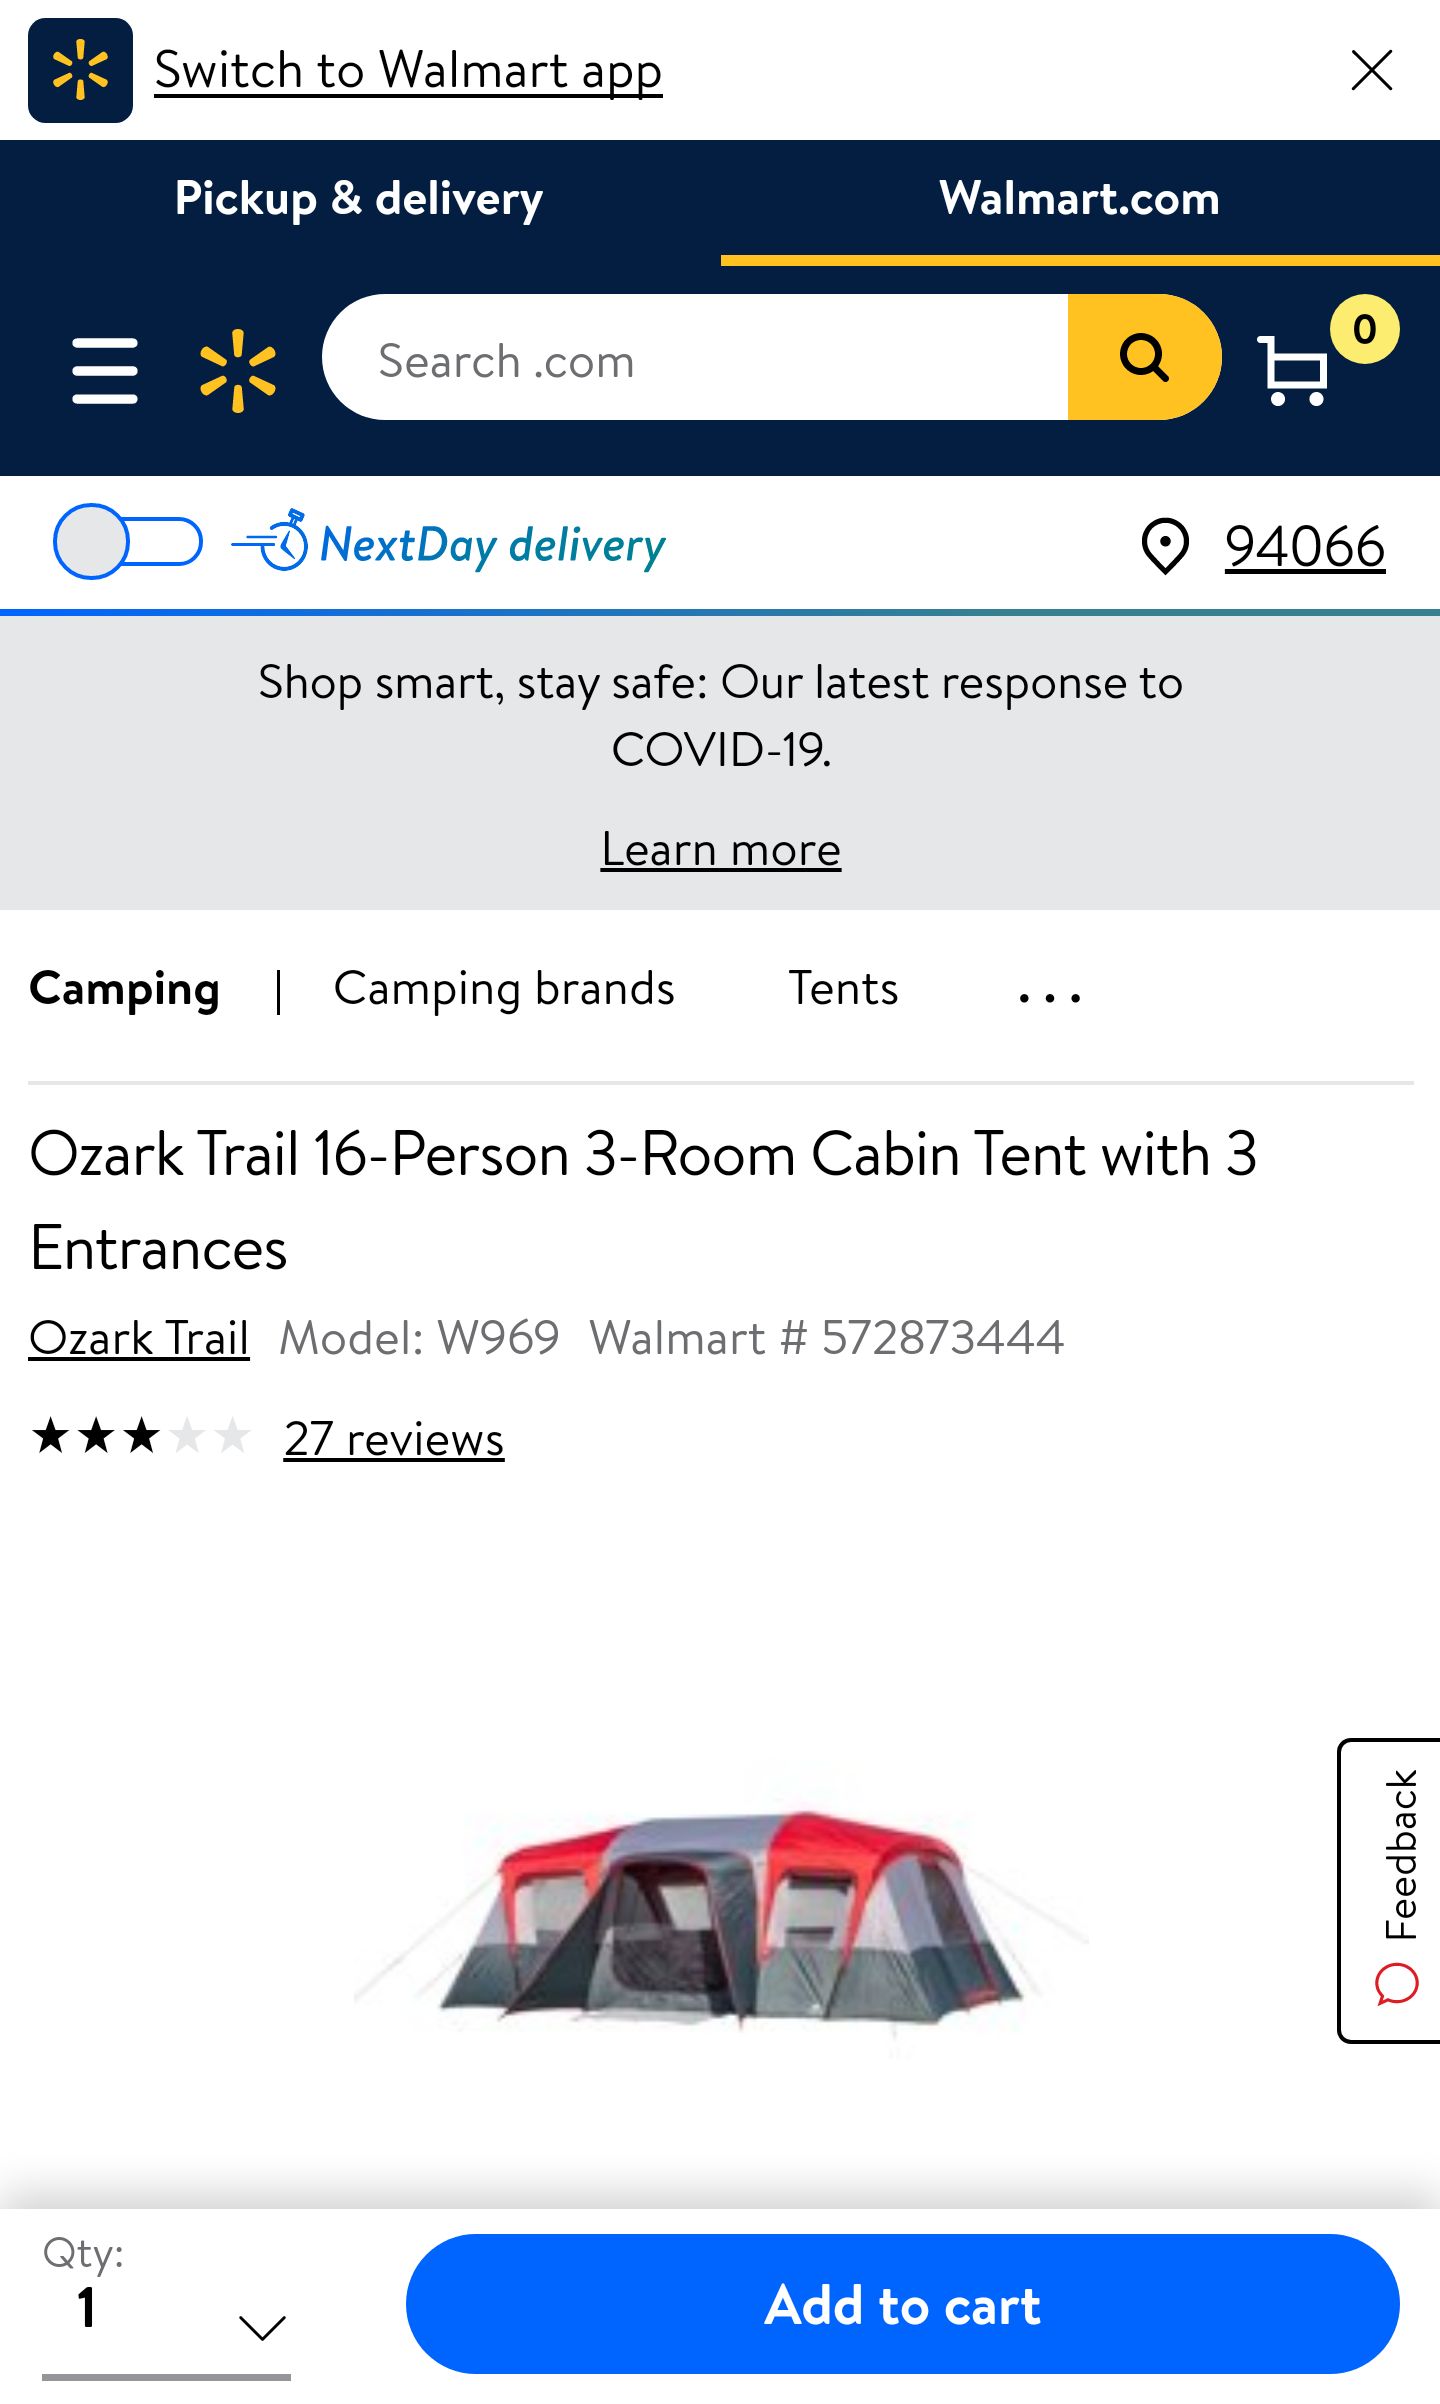 户外帐篷Ozark Trail 16-Person 3-Room Cabin Tent with 3 Entrances - Walmart.com - Walmart.com